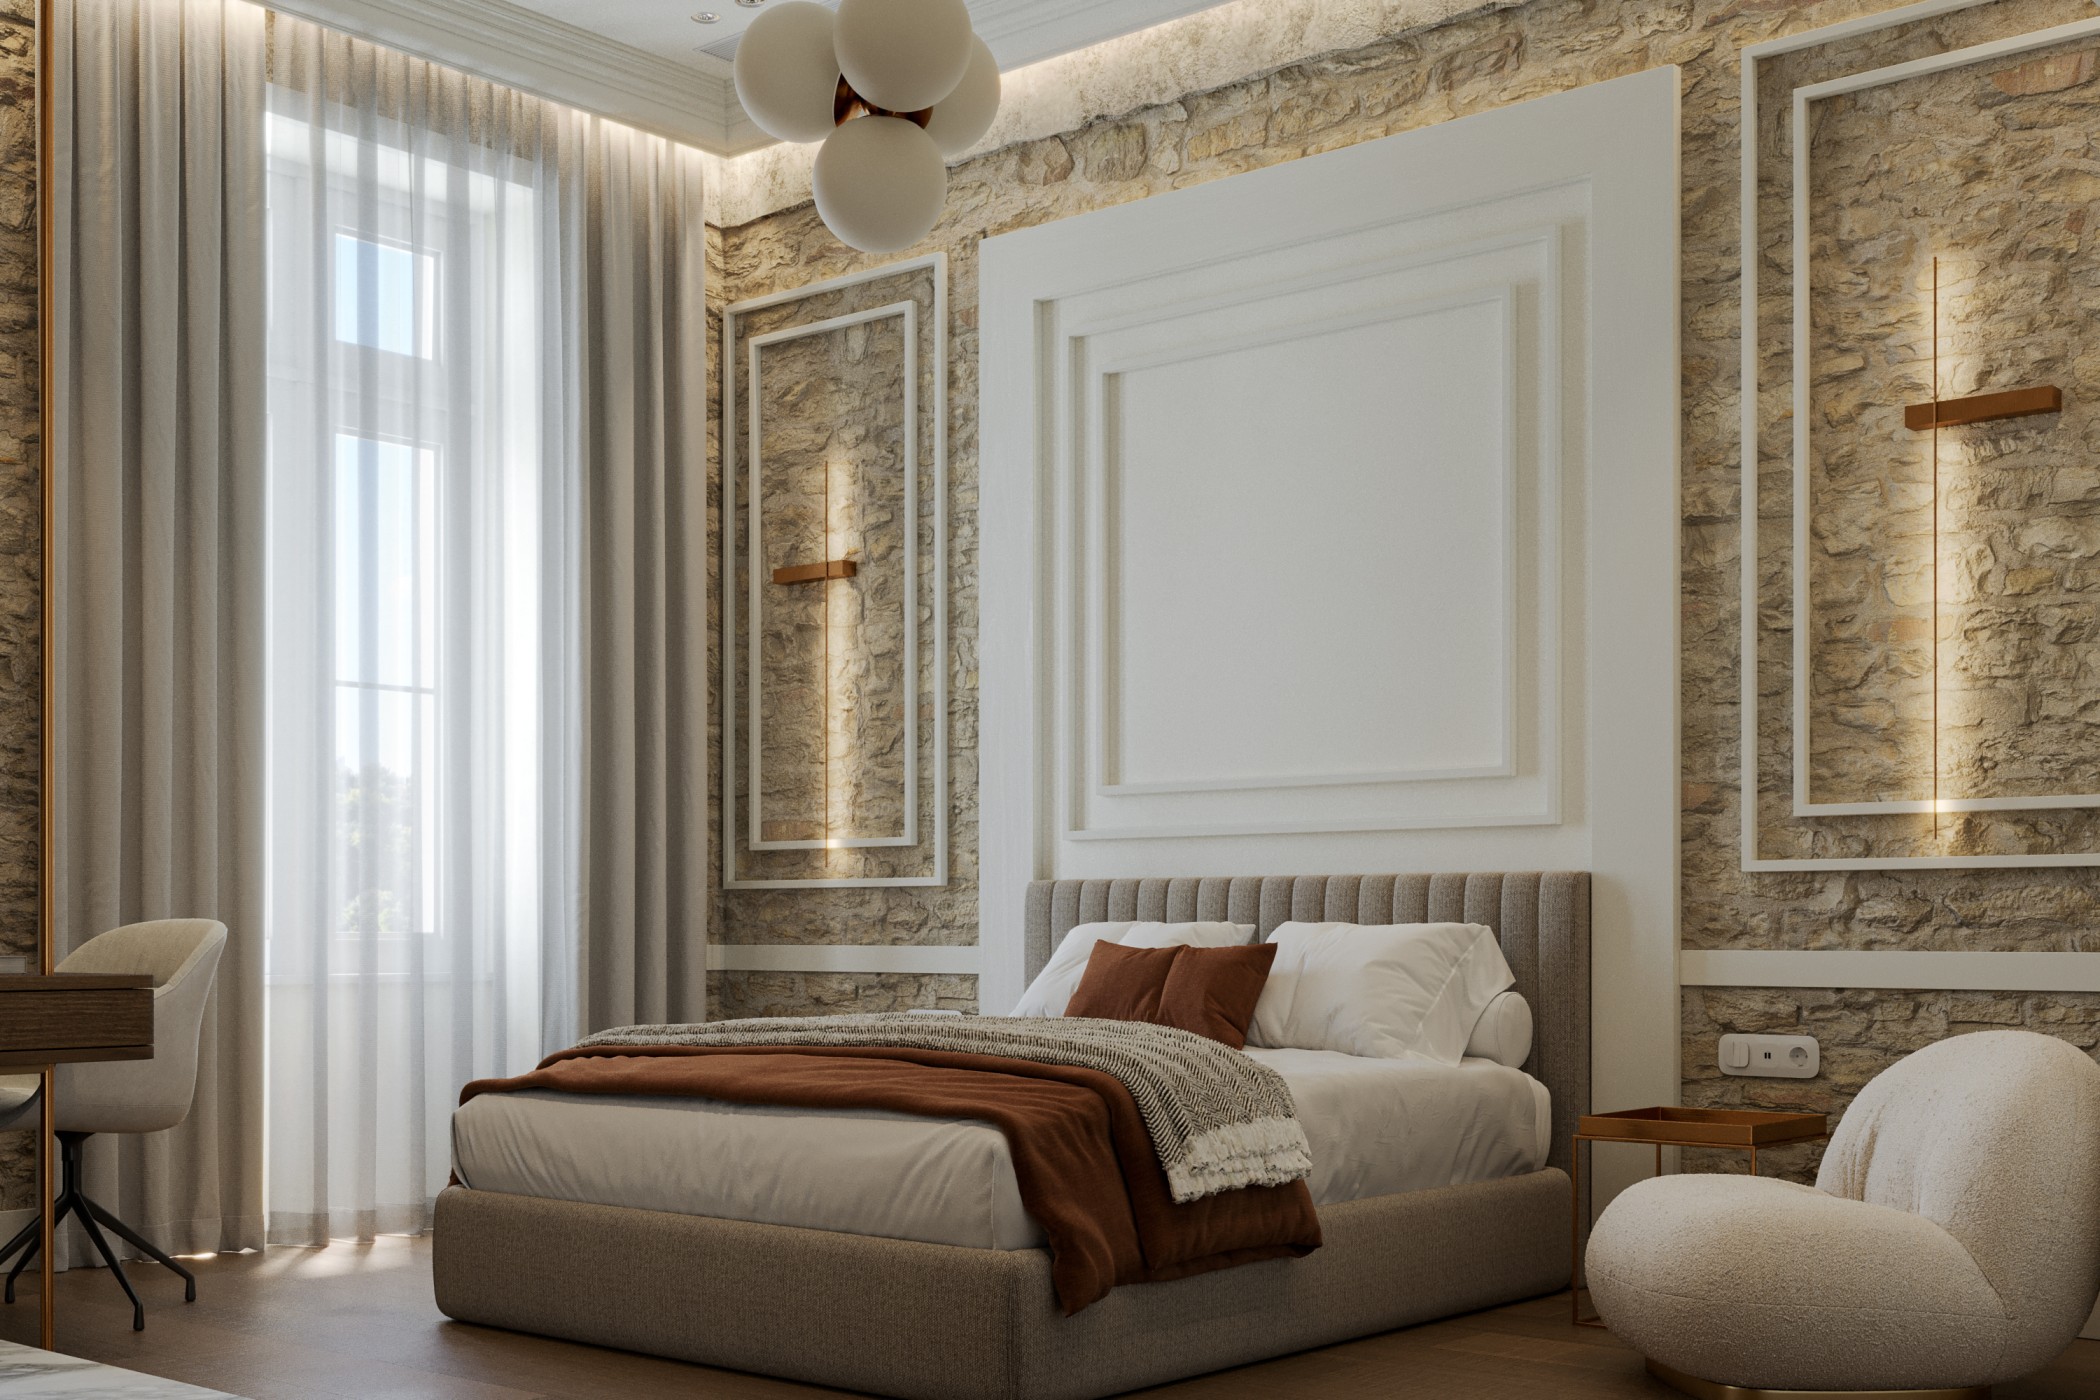 Νέο boutique ξενοδοχείο στην Αθήνα - Πηγή: Aria Hotels